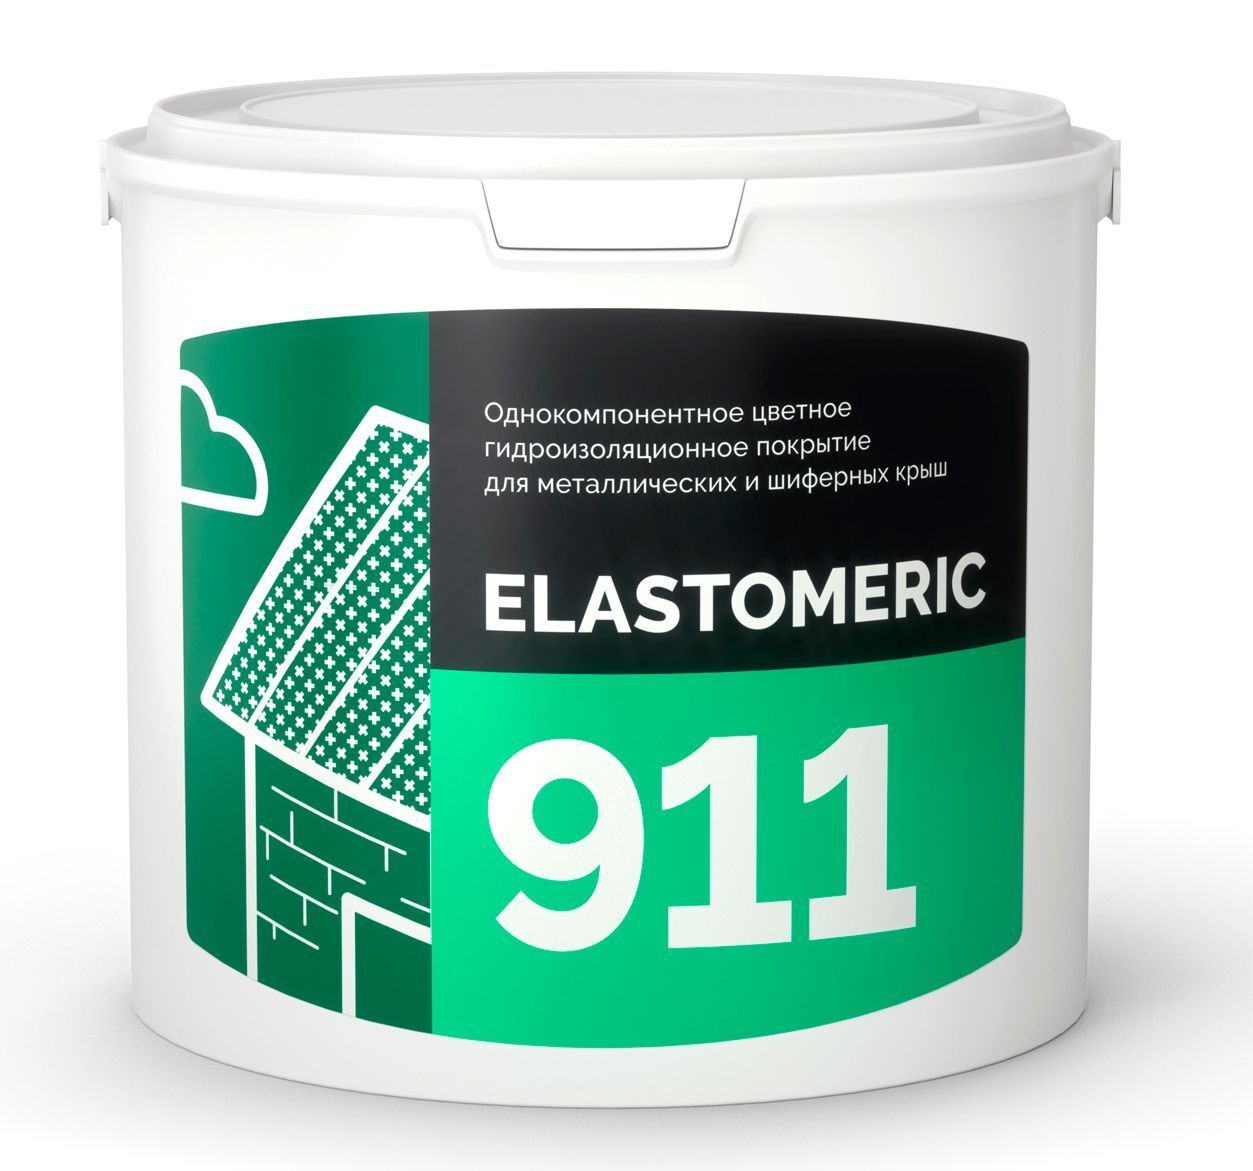 Гидроизоляция метллической и шиферной кровли - ELASTOMERIC 911 3 кг RAL 9003 сигнально-белый